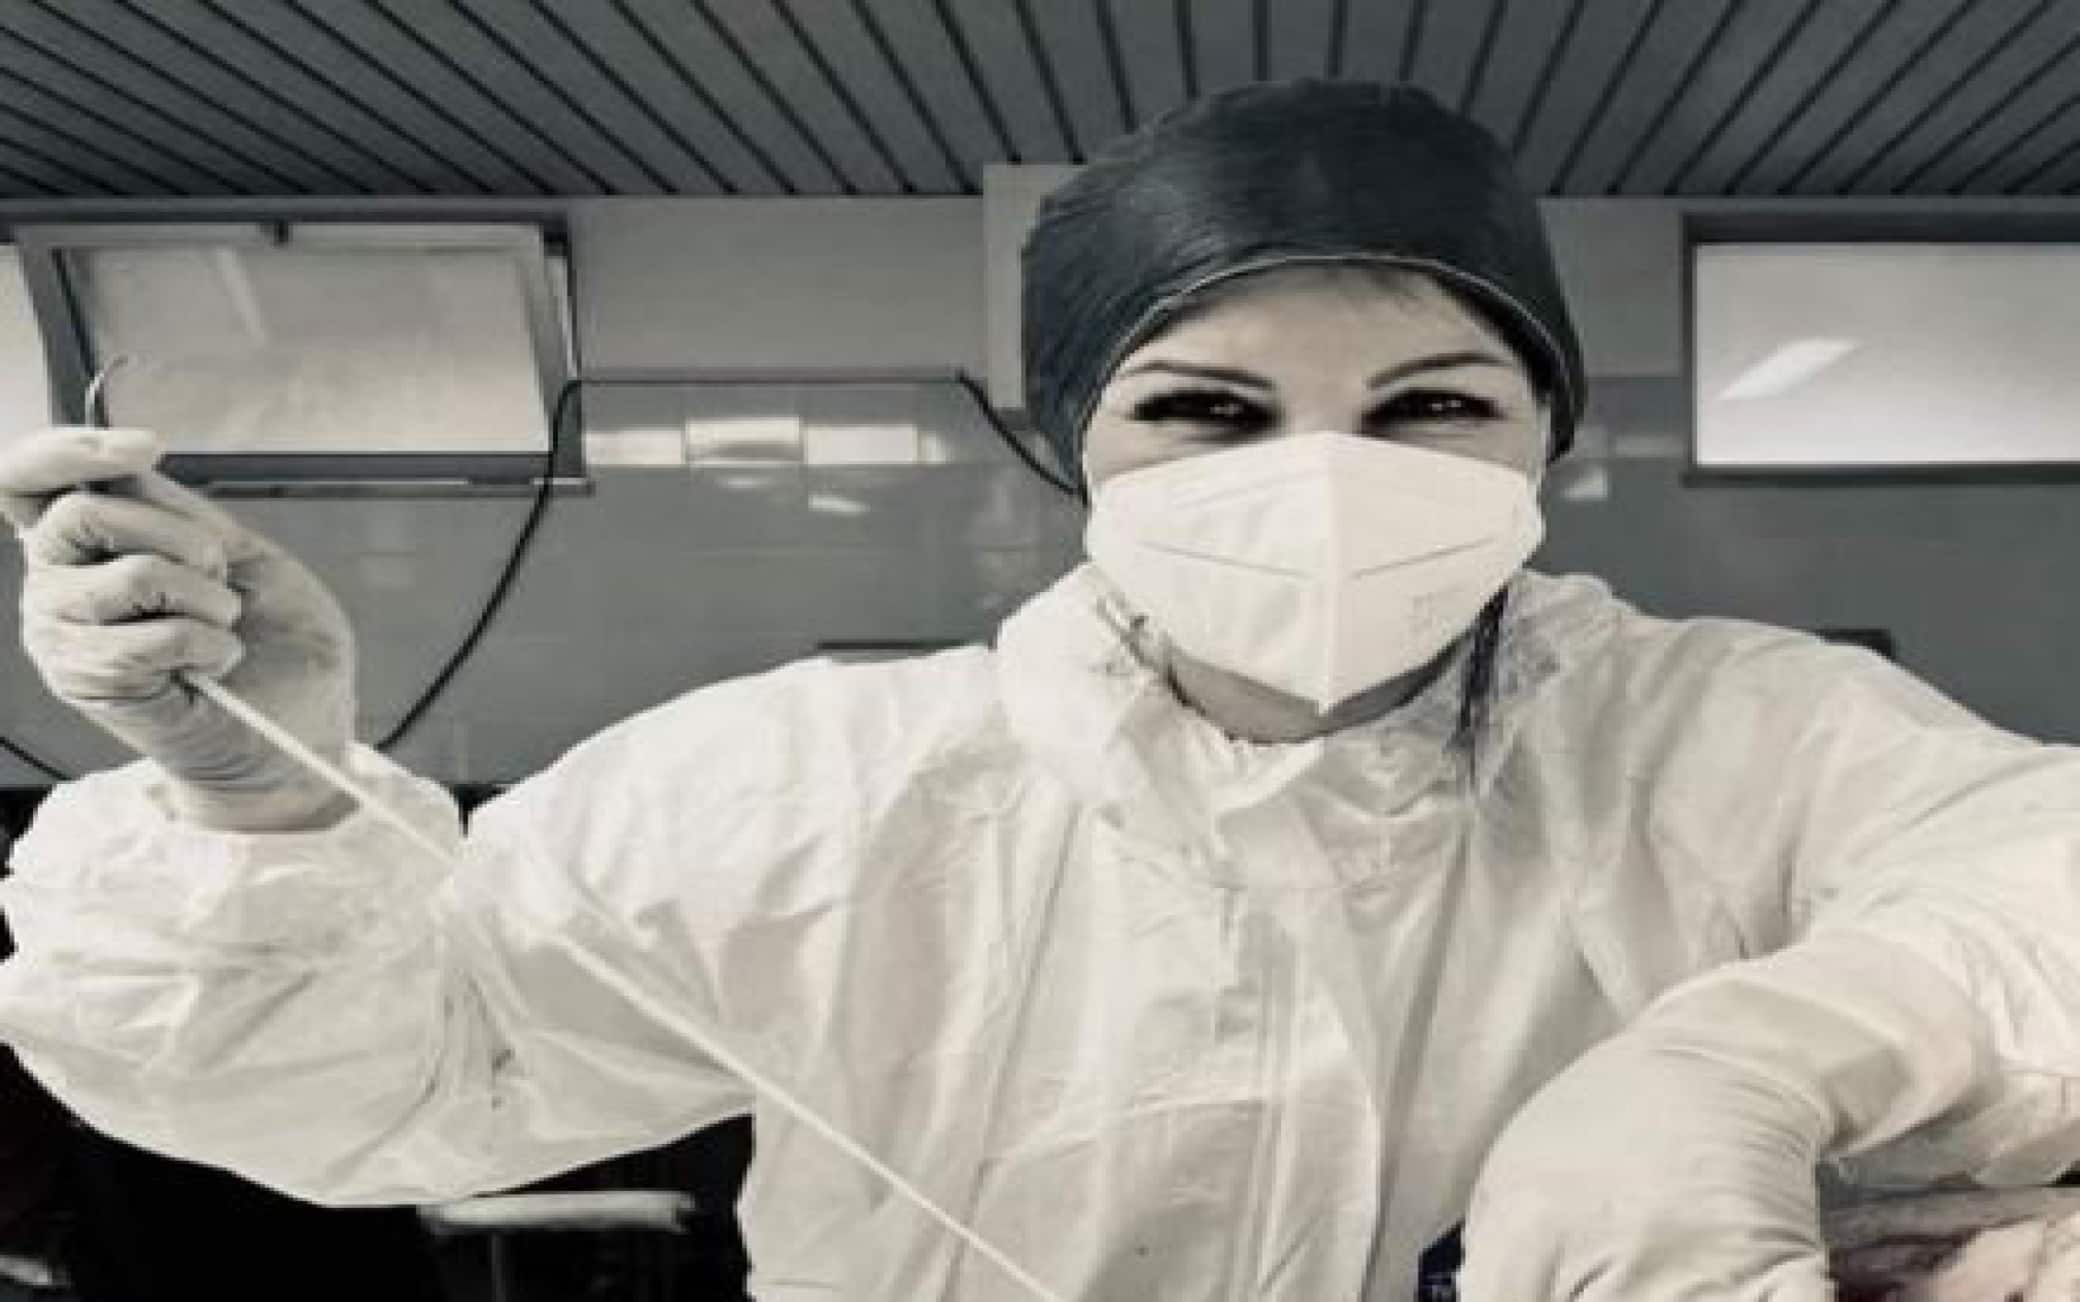 Brindisi, operatrice sanitaria si fa fotografare mentre sutura un cadavere  e pubblica le immagini | Sky TG24